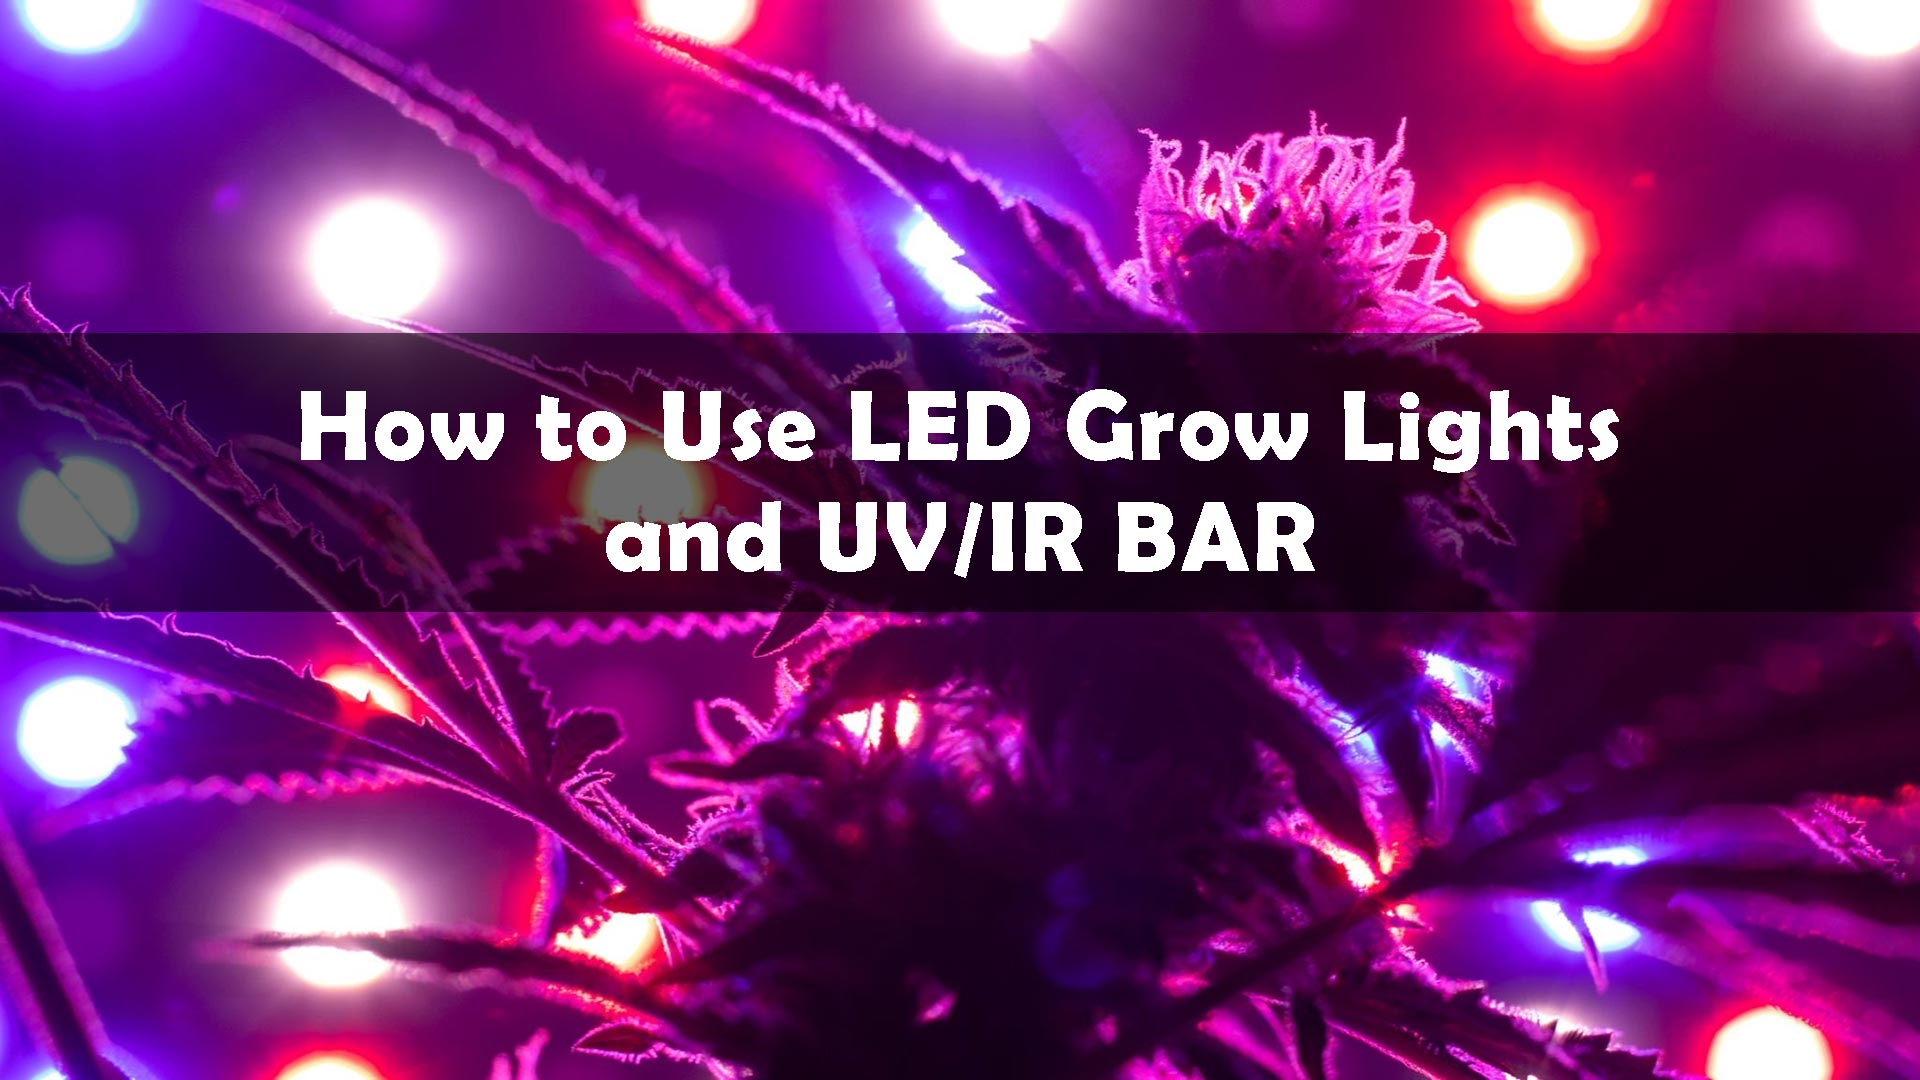 How to Use LED GROW Lights And UV/IR BAR